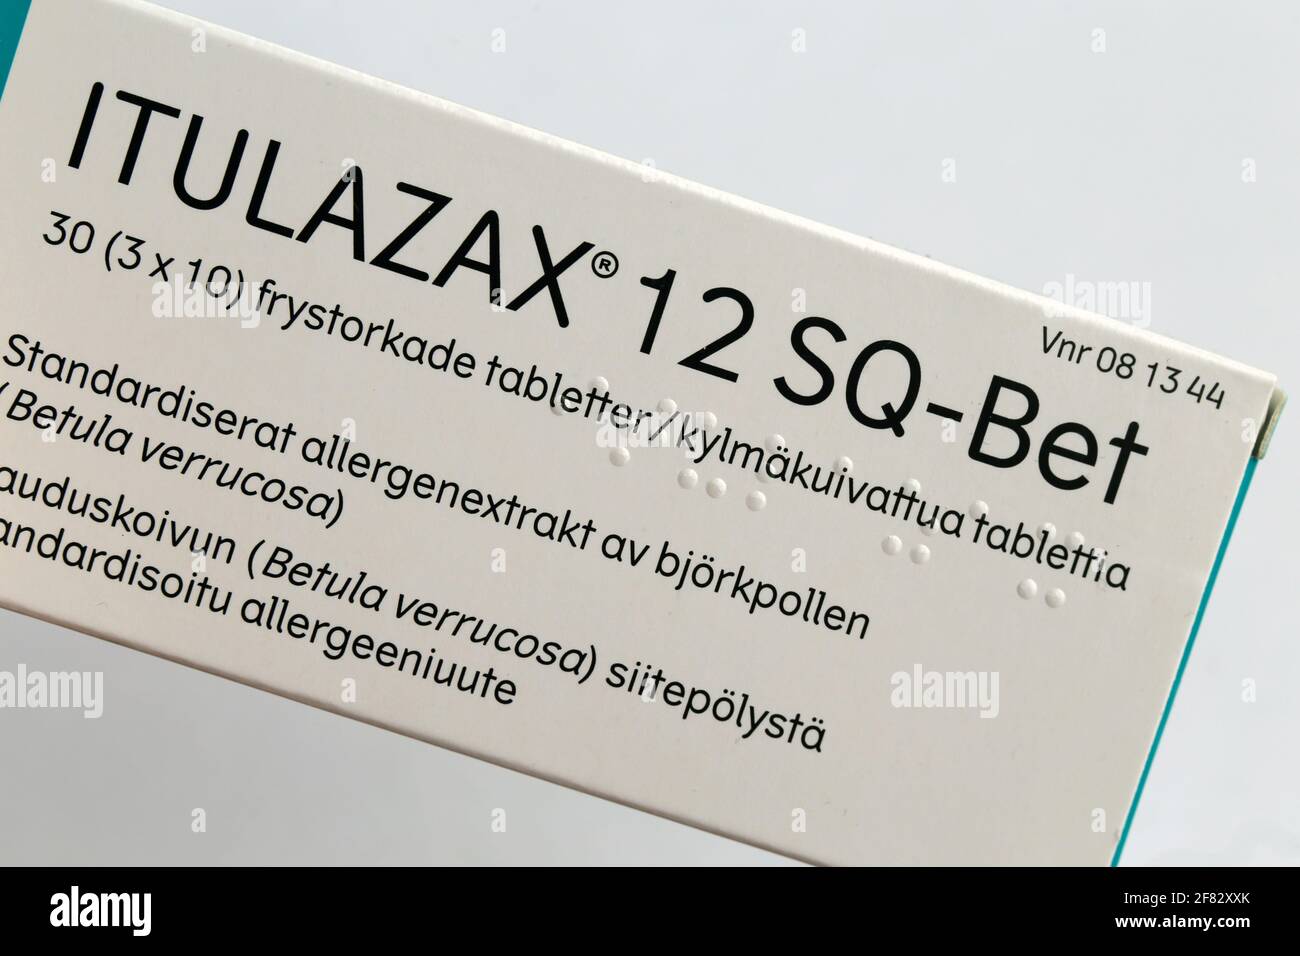 Itulazax Tree sublingual allergy immunotherapy (SLIT) Tabletten zur Desensibilisierung von Birken- und Baumpollenallergien verwendet. Apr 2020, Espoo, Finnland. Stockfoto